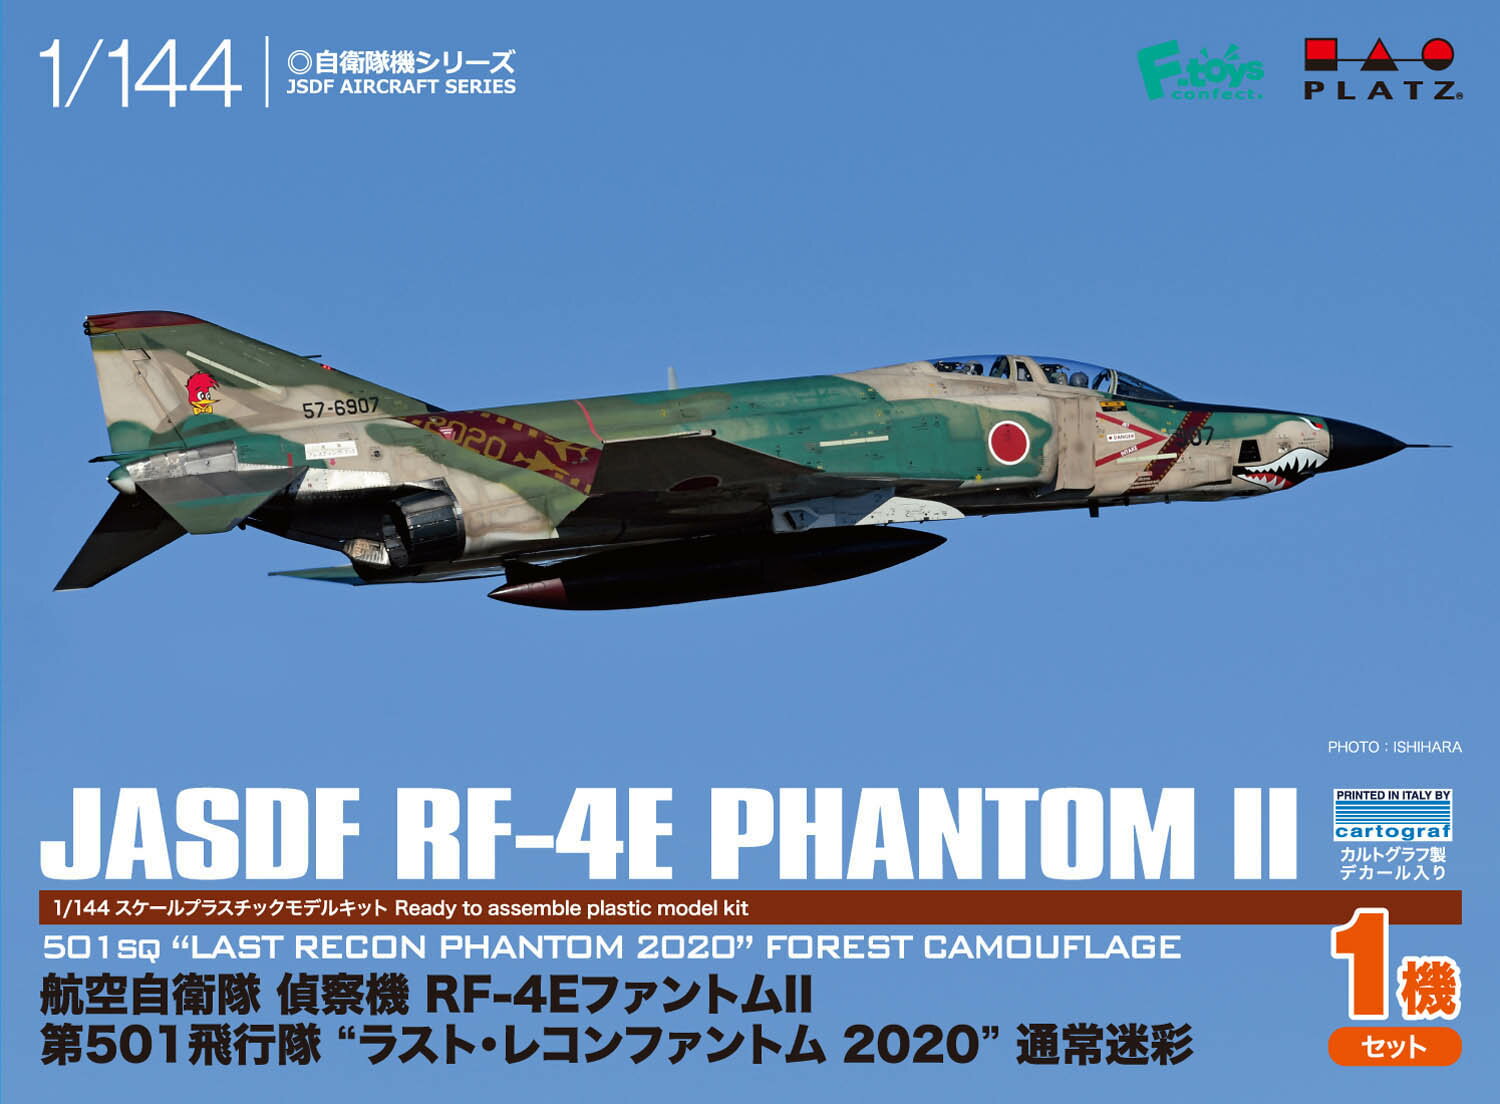 プラッツ 1/144 航空自衛隊 偵察機 RF-4EファントムII 第501飛行隊 ラスト・レコンファントム 2020(通常迷彩) PF-30